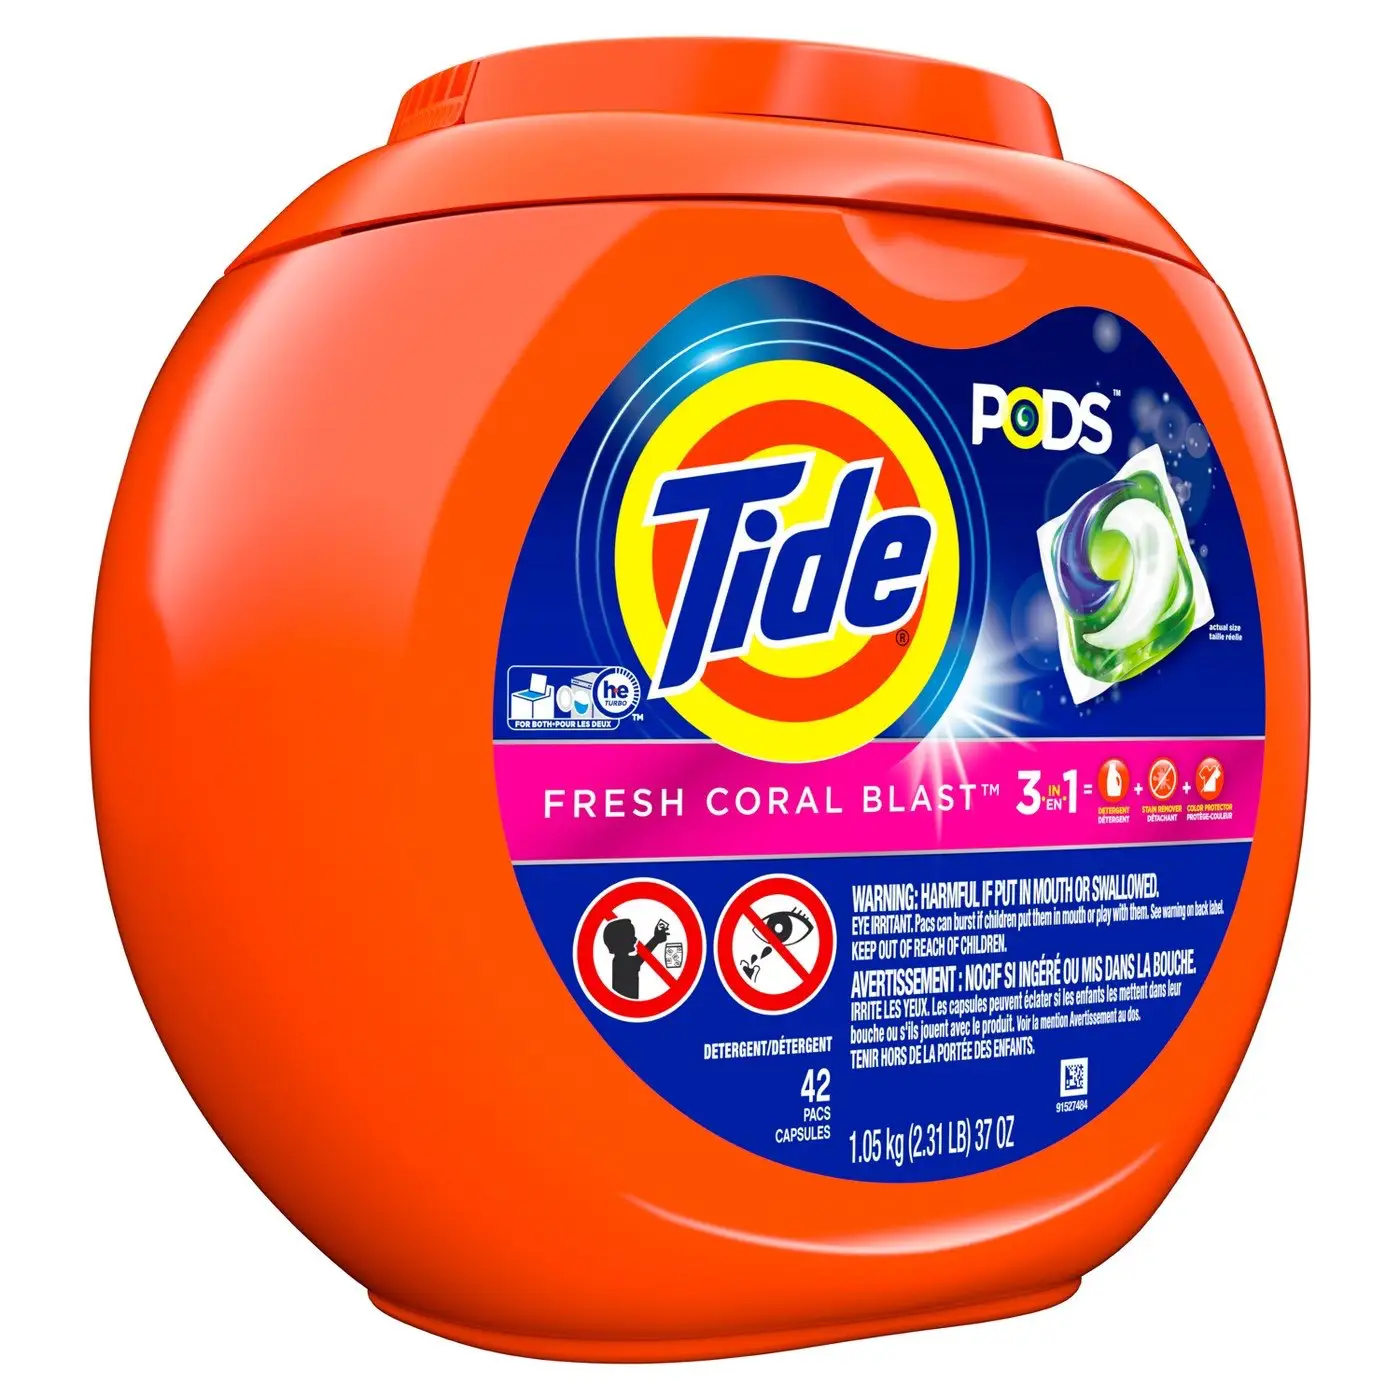 Detergente para ropa líquido y en polvo de calidad Original/Detergente para ropa líquido Original Tide, 32 cargas, 1.36L